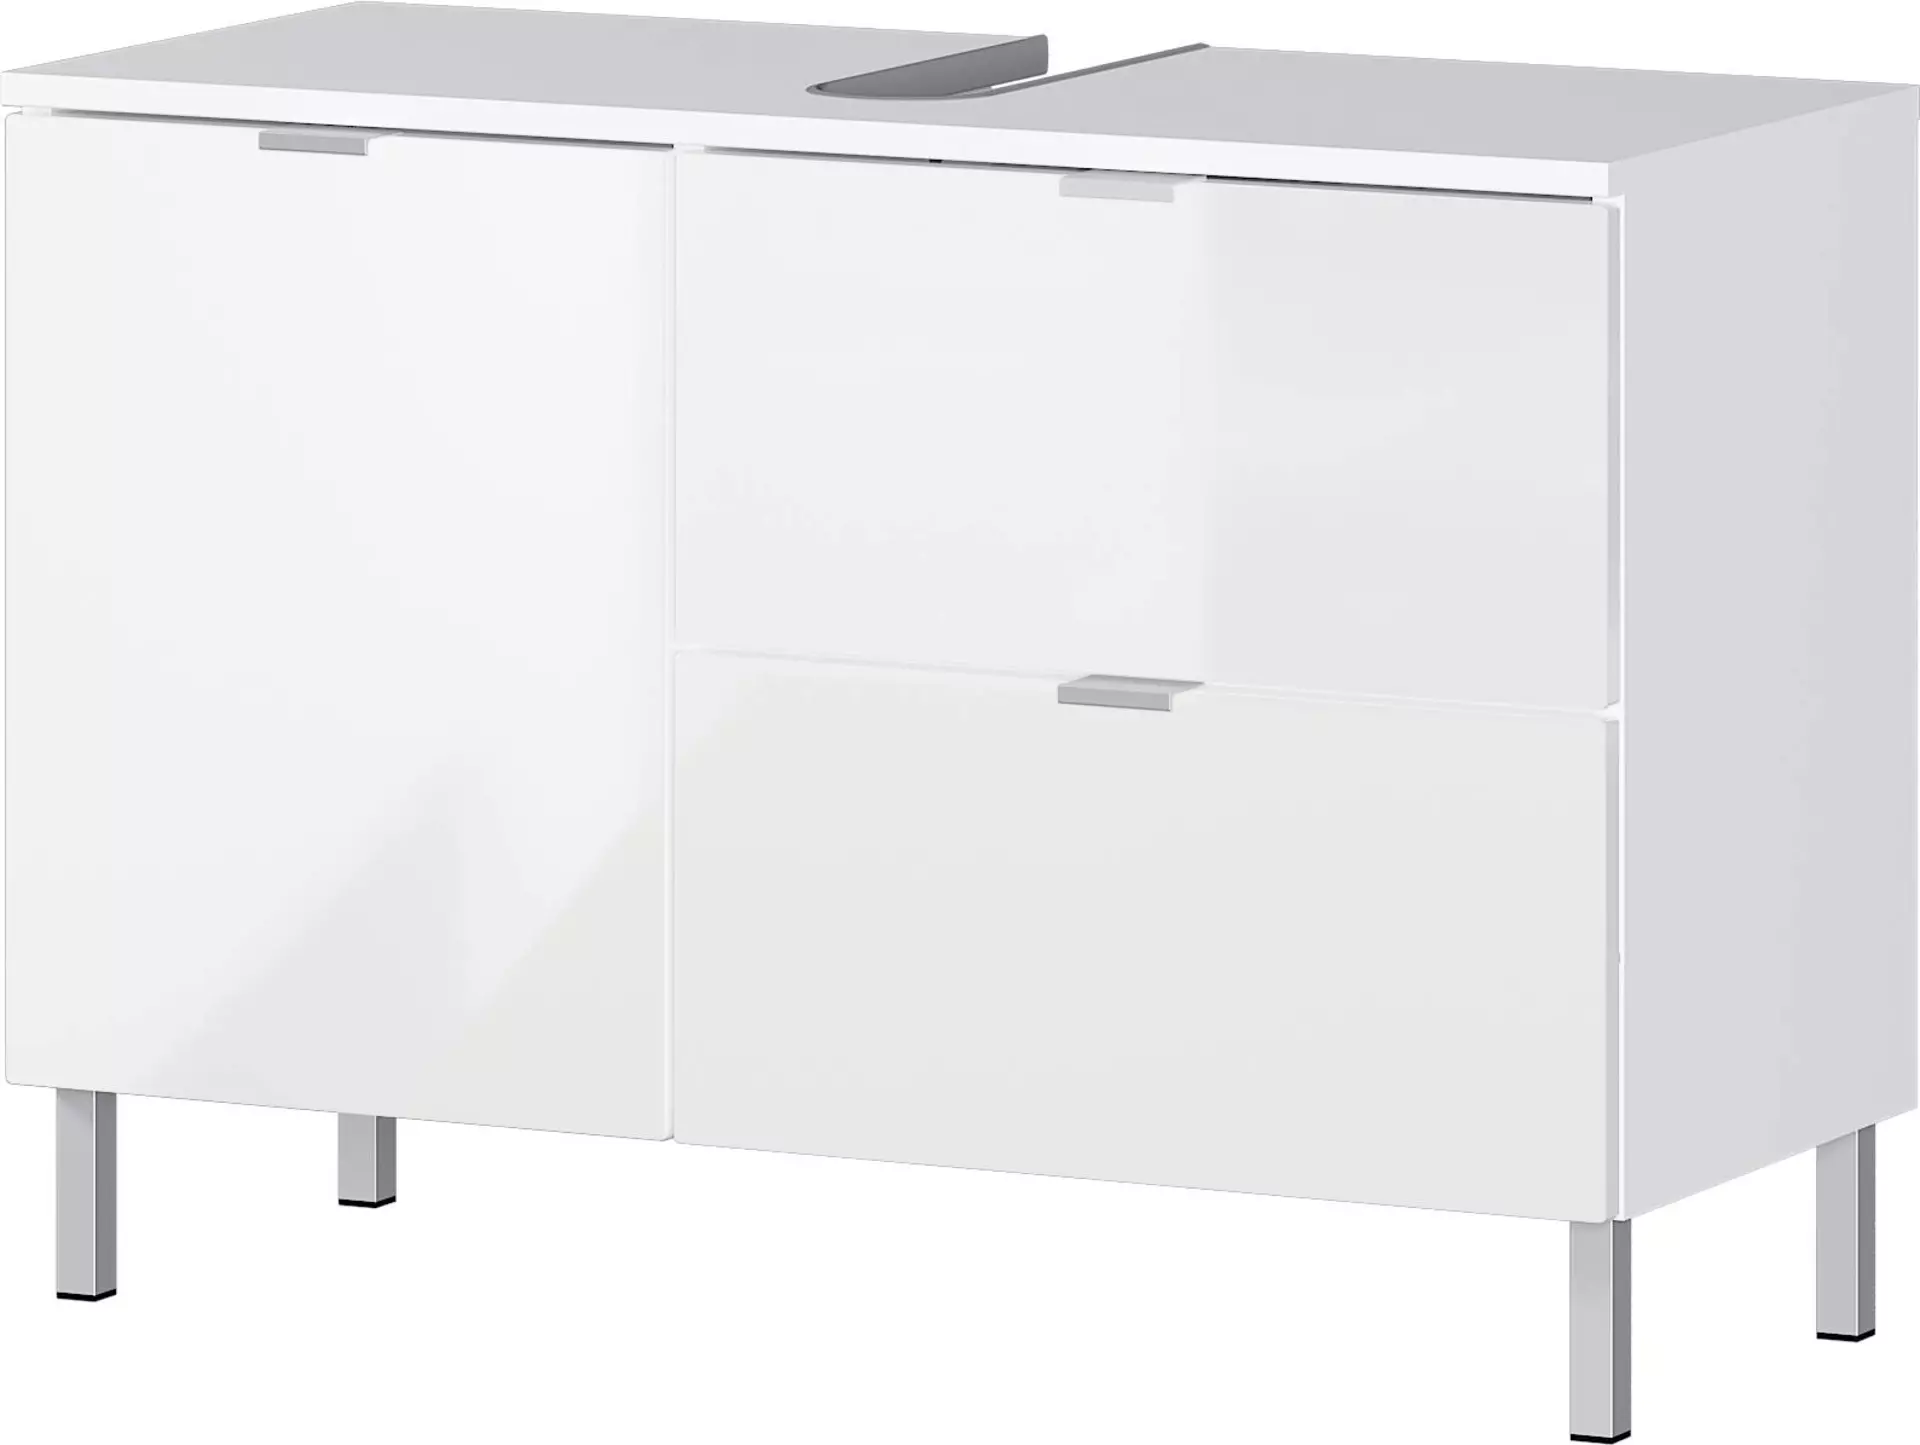 Waschbeckenunterschrank ca. 80 x 56 x 34 cm weiß | Möbel Inhofer | Waschbeckenunterschränke